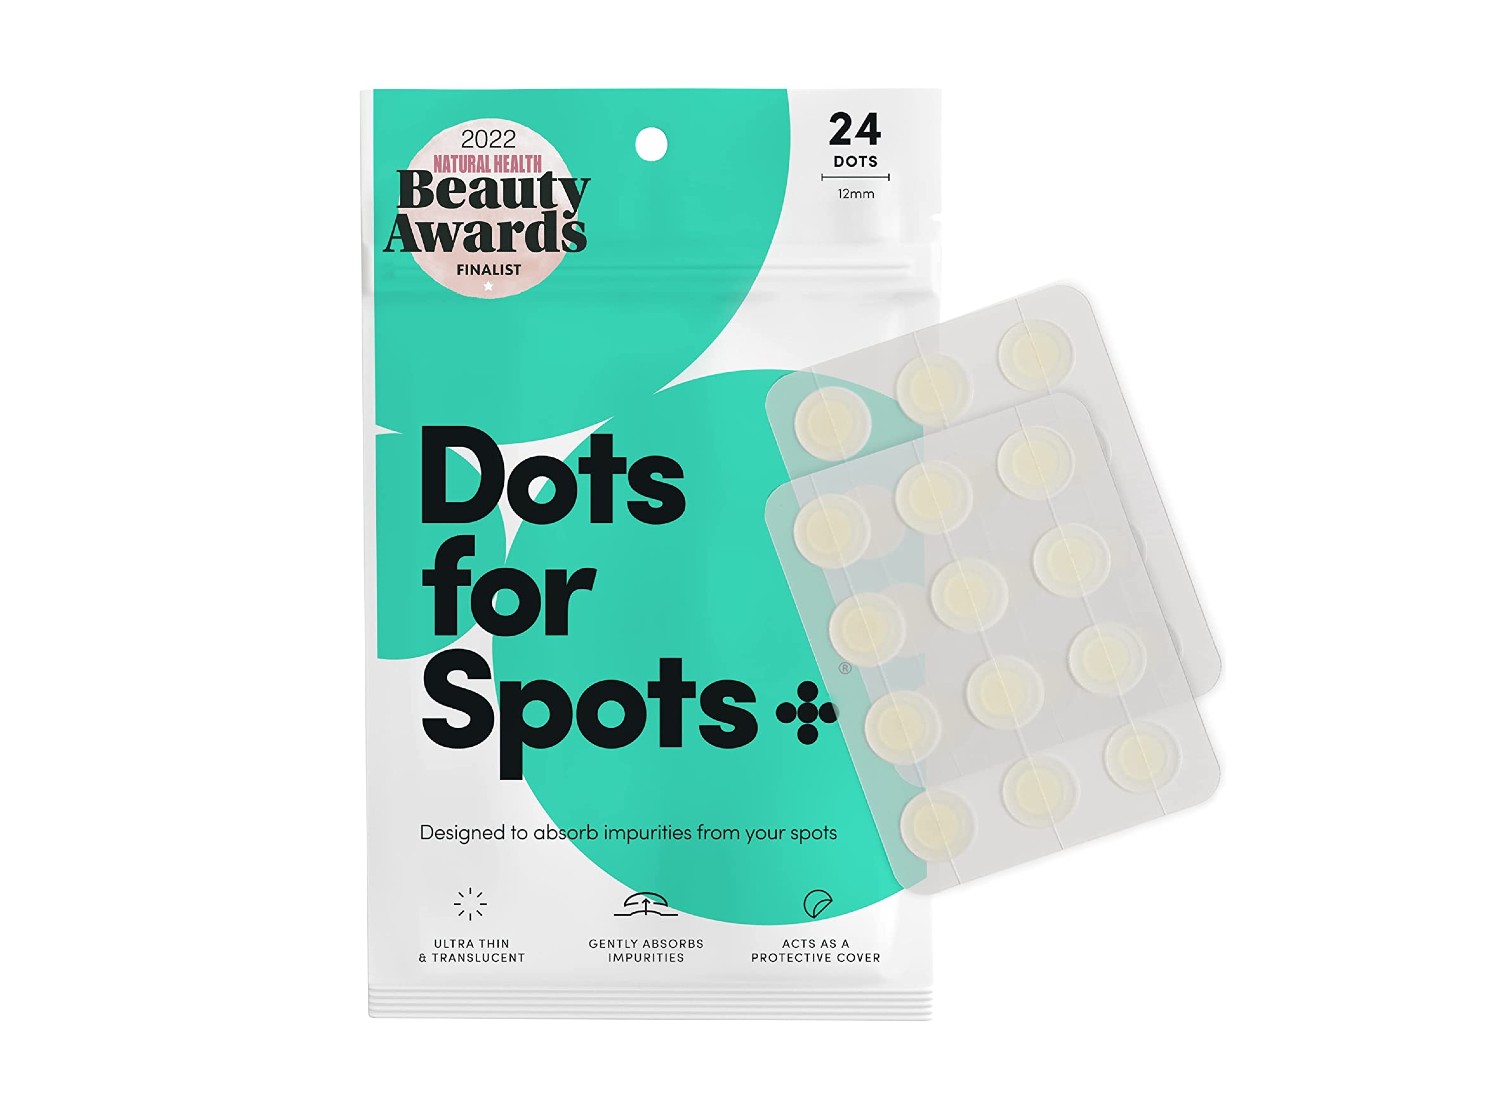 Wadah penambal jerawat Dots for Spots dengan latar belakang putih.